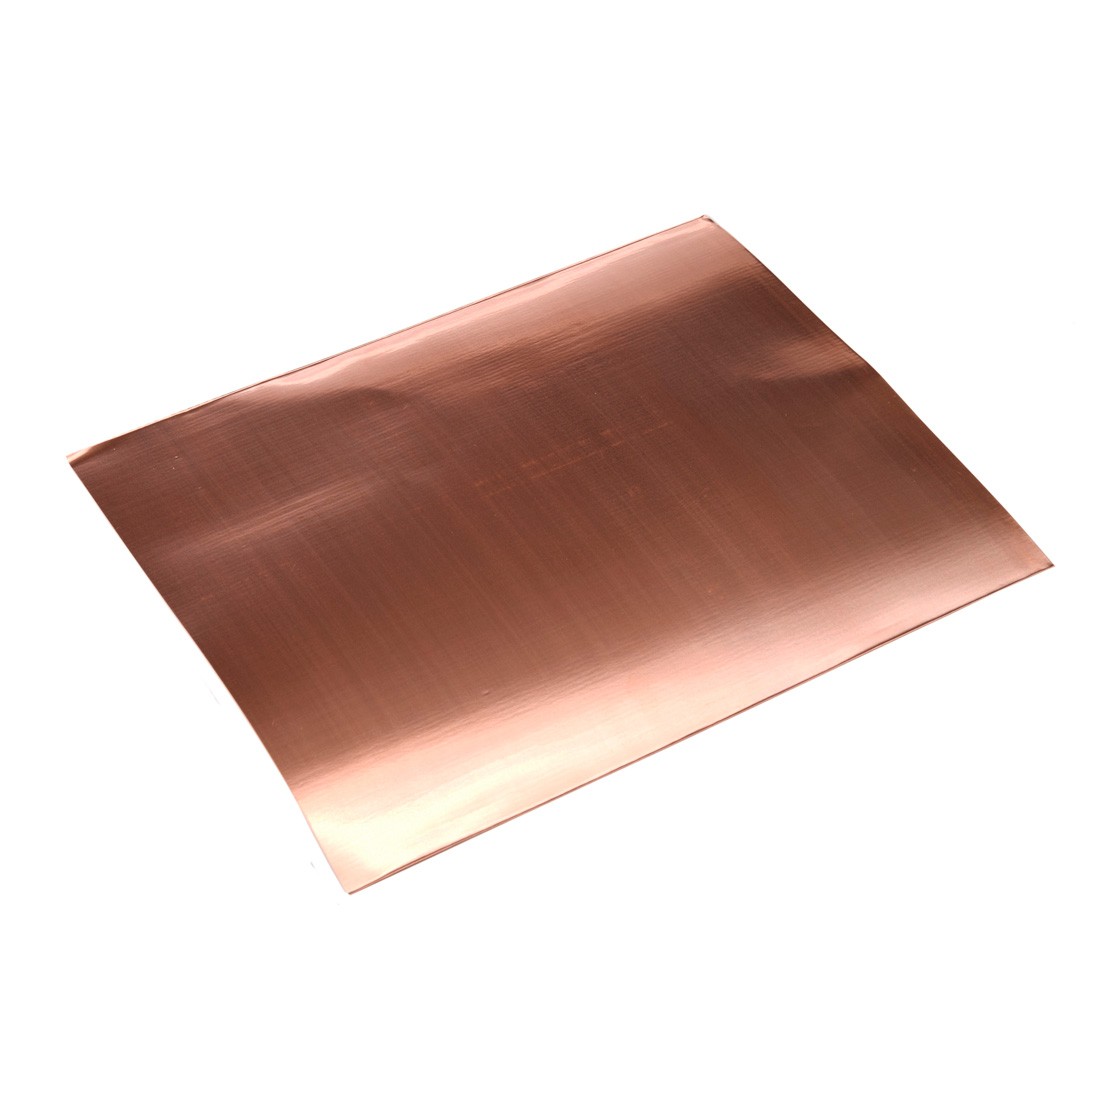 Amati Model - Copper sheets 200x250mm - Metallic materials